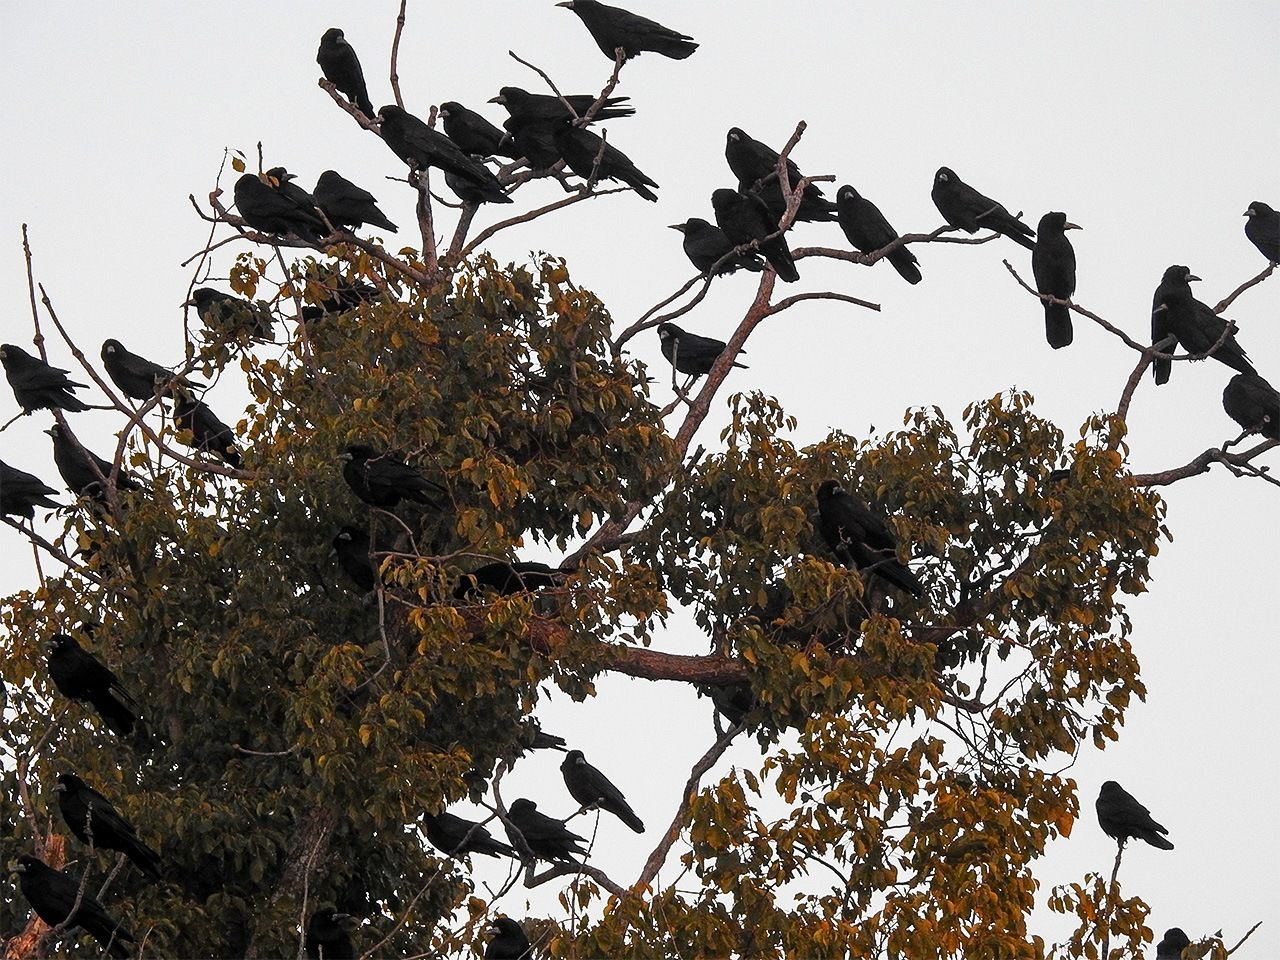 Des corbeaux dans les arbres ; leurs croassements et fientes posent problème.